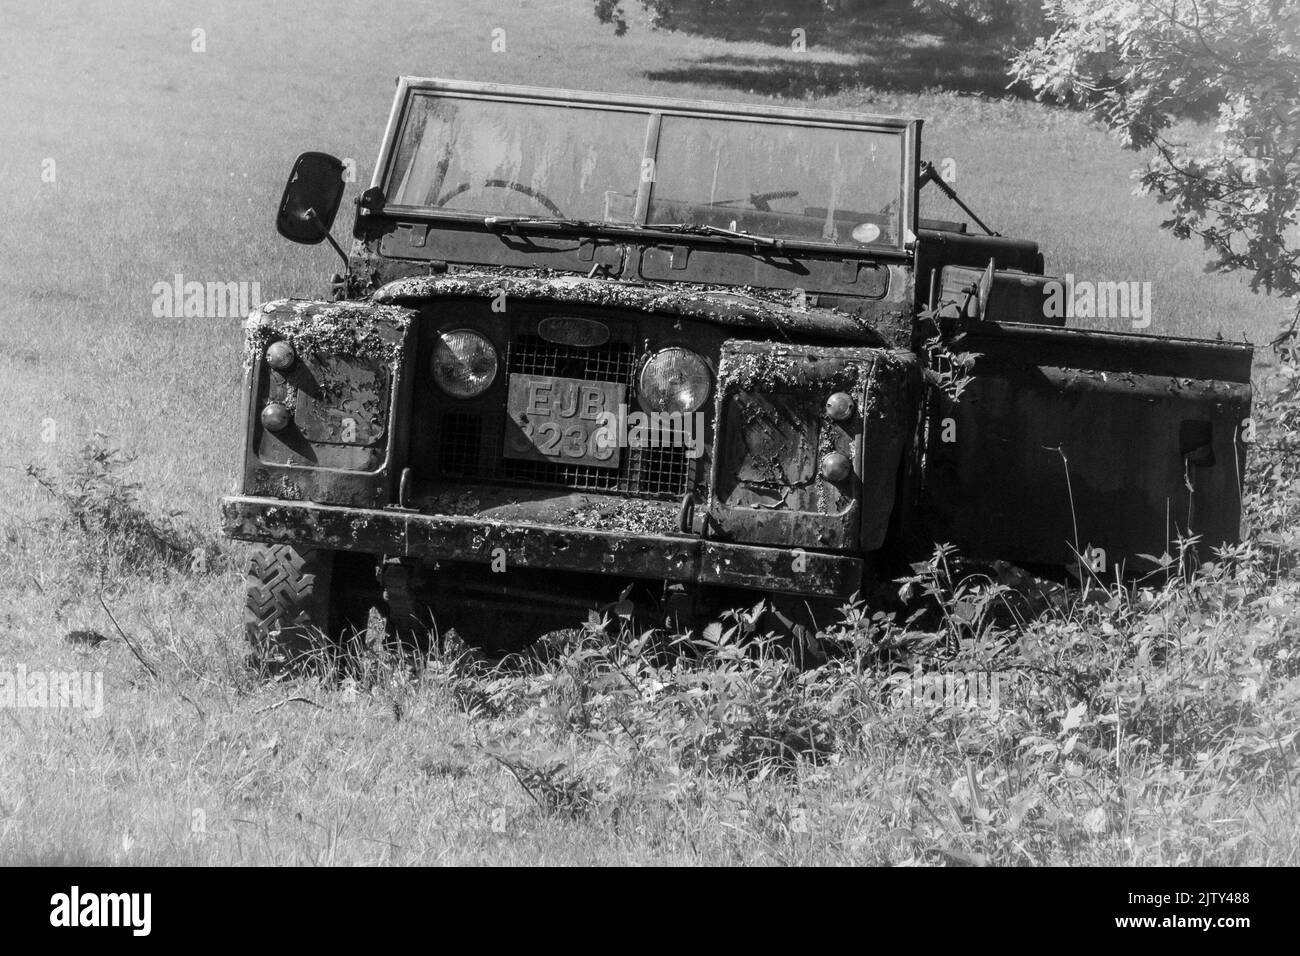 Land rover abbandonata in disuso in bianco e nero Foto Stock